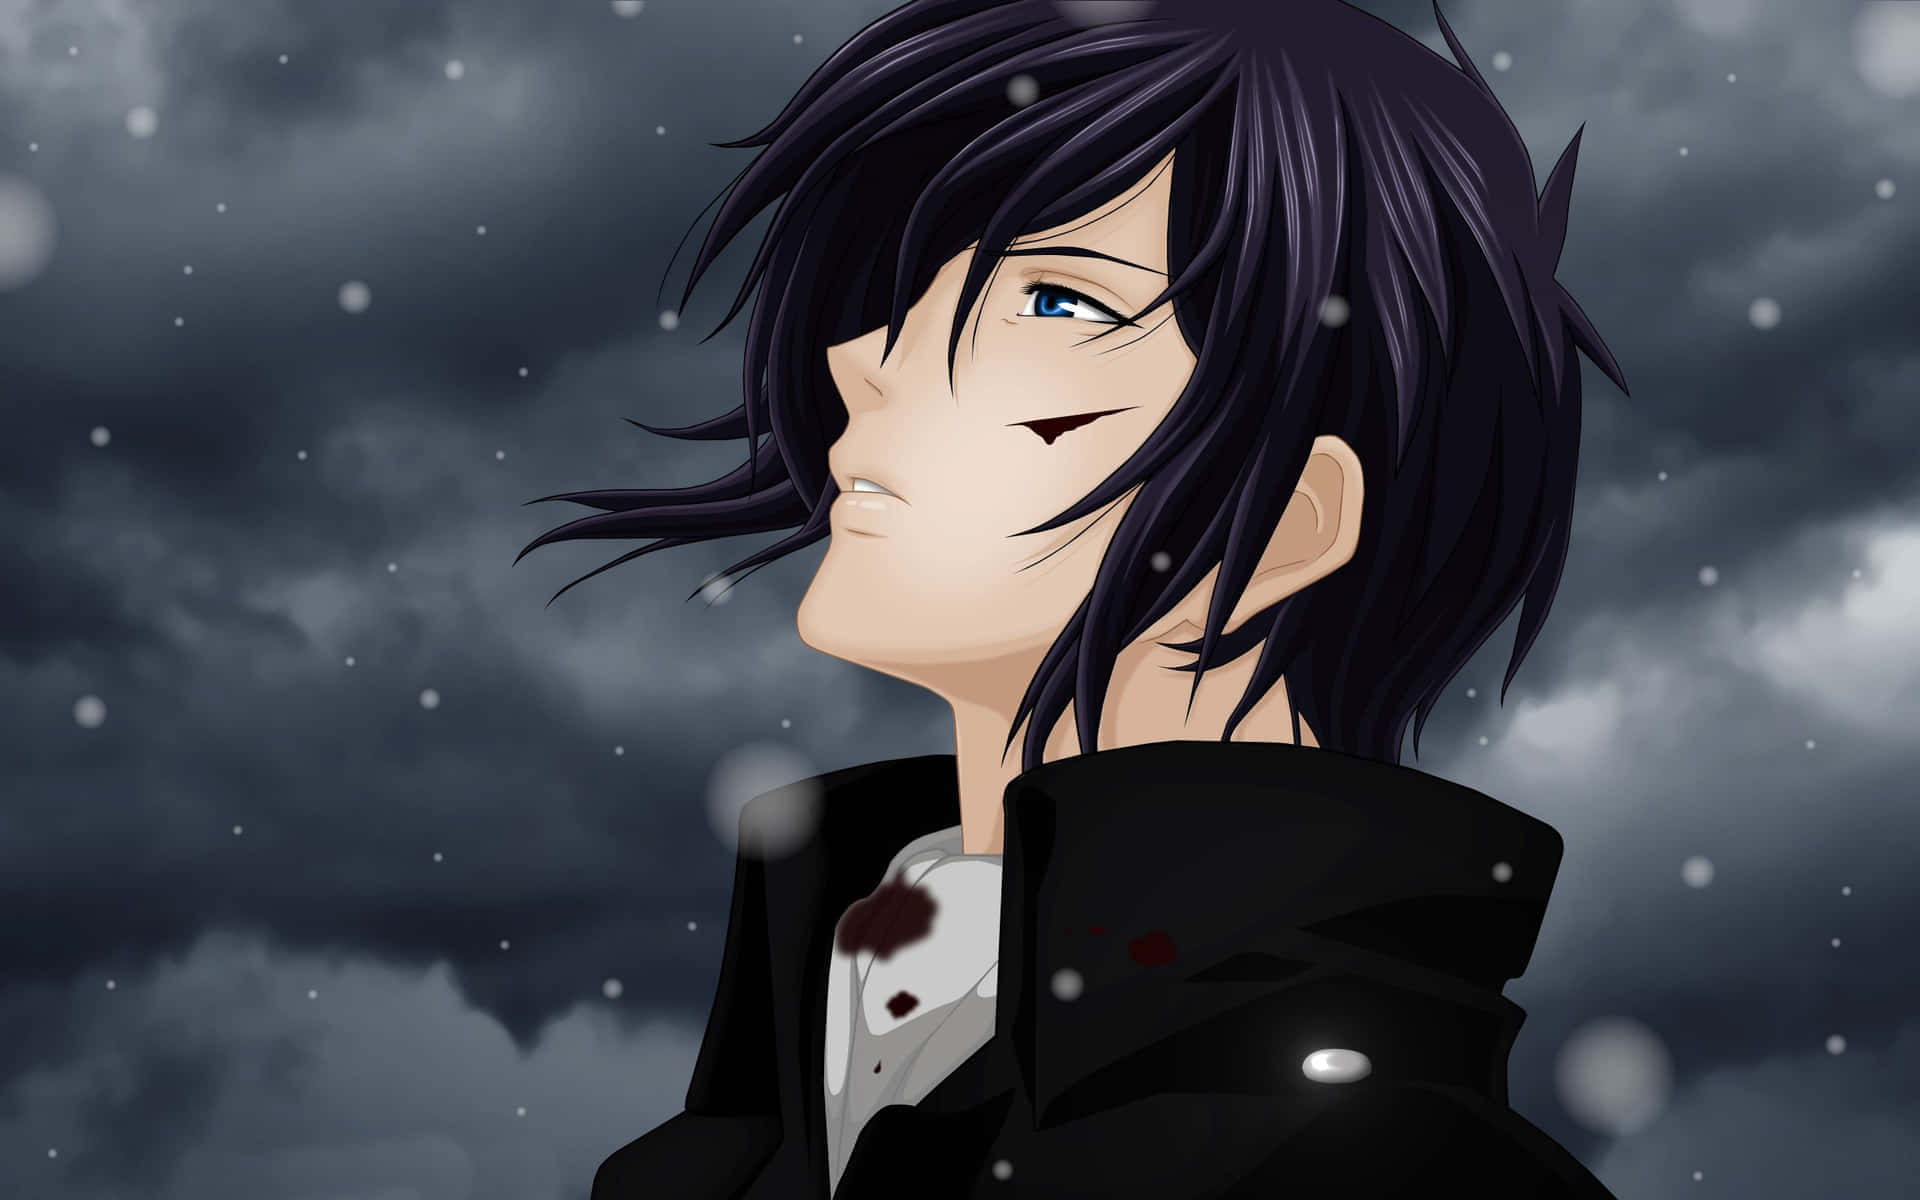 Anime Boy Black Hair Snowy Backdrop Wallpaper